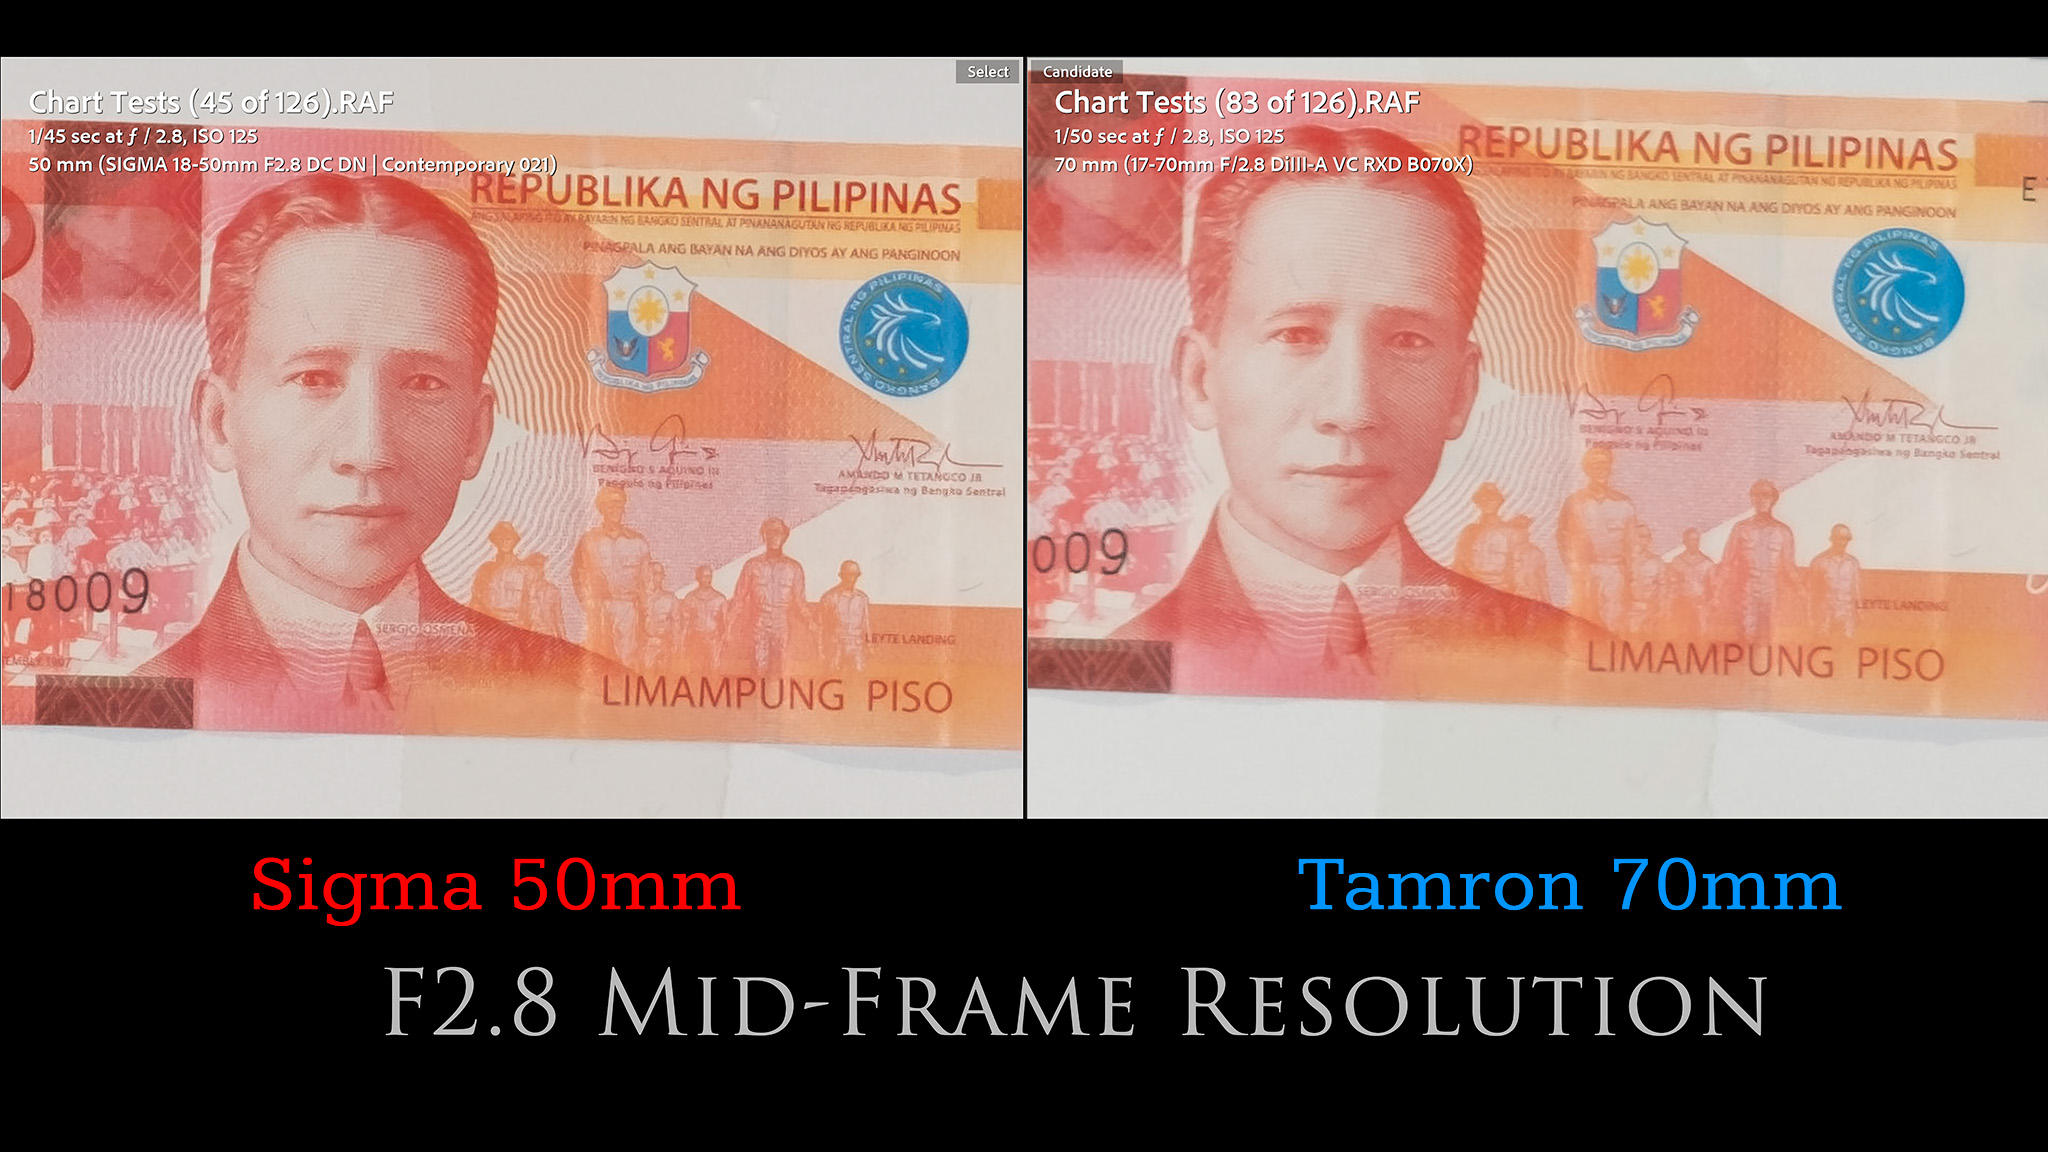 41-Tamron-70mm